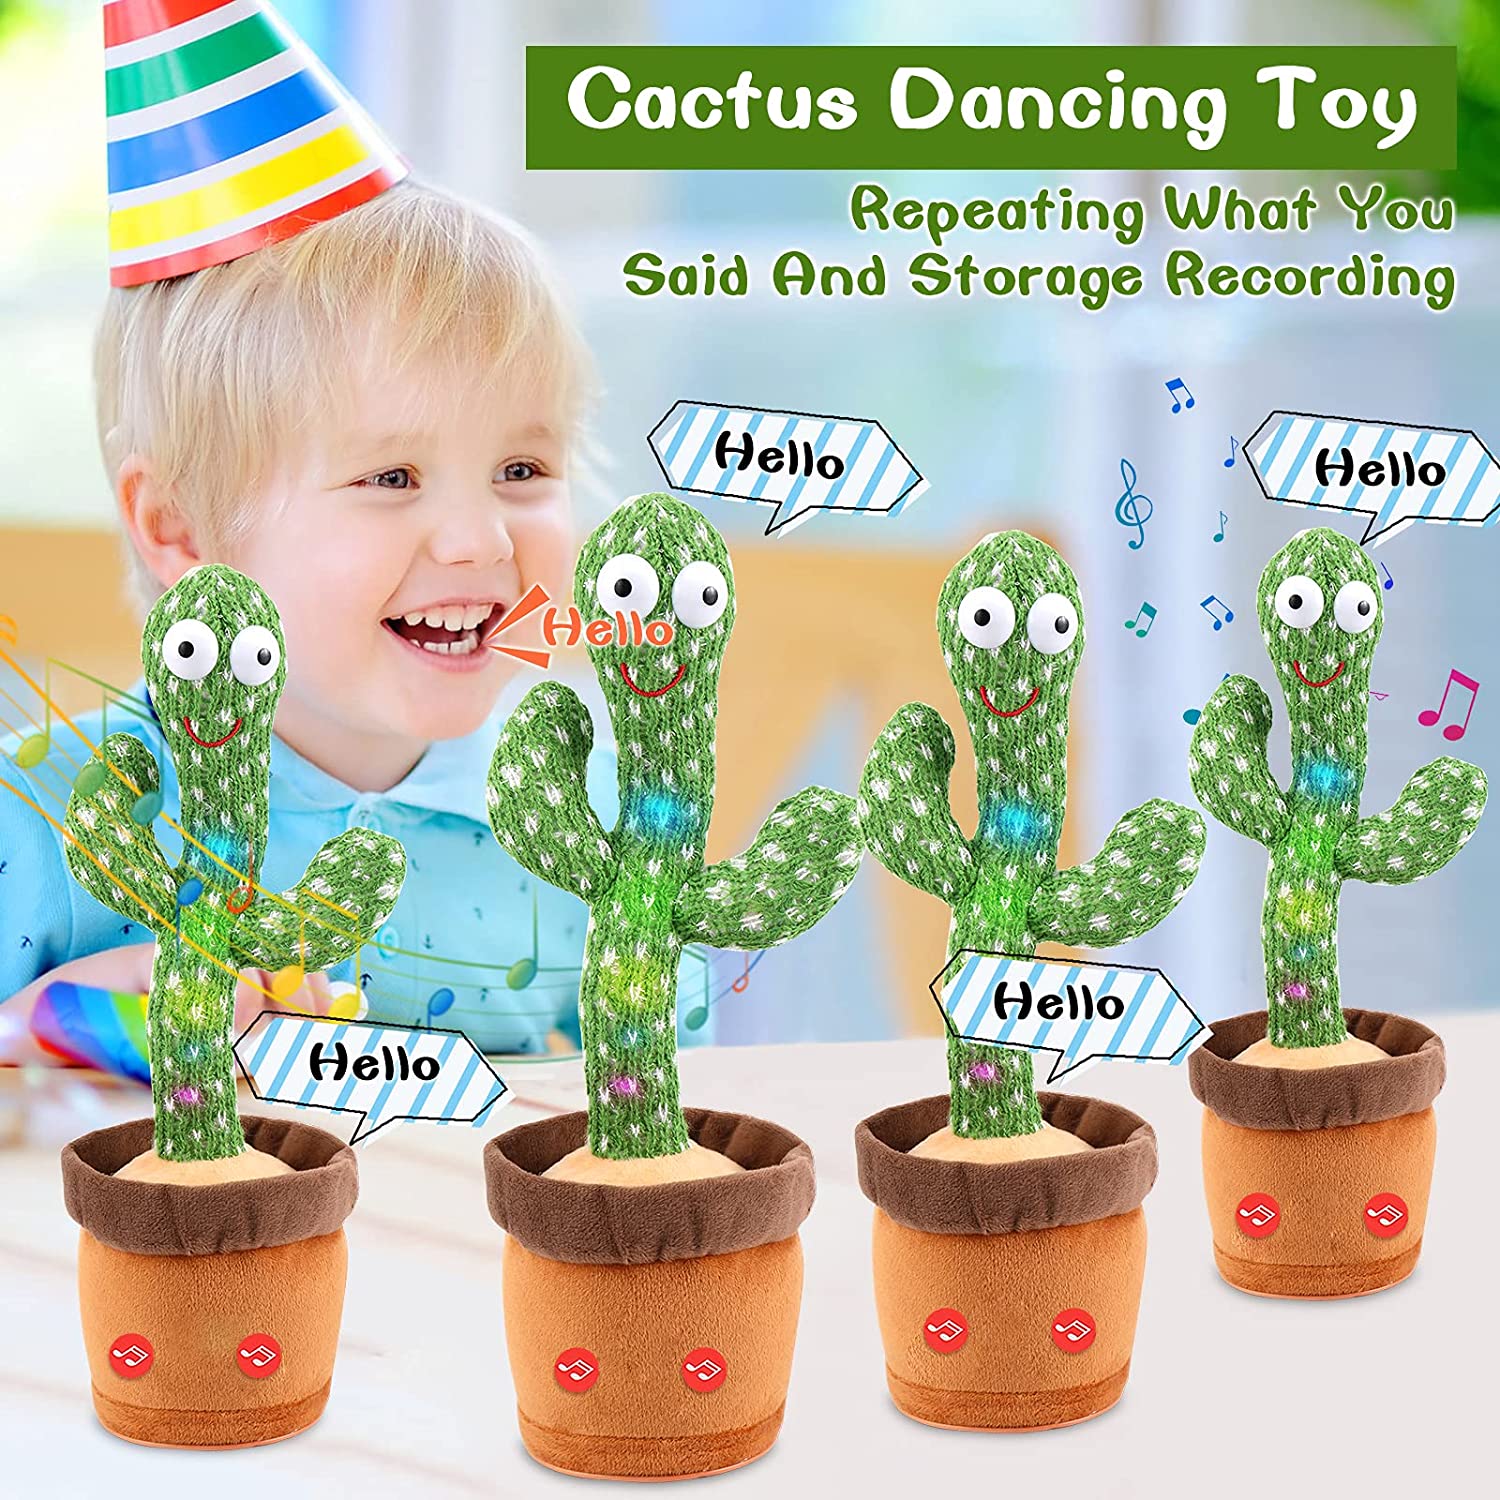 Cactus Qui Danse et répète,Dancing Cactus&Cactus Chantant&Cactus